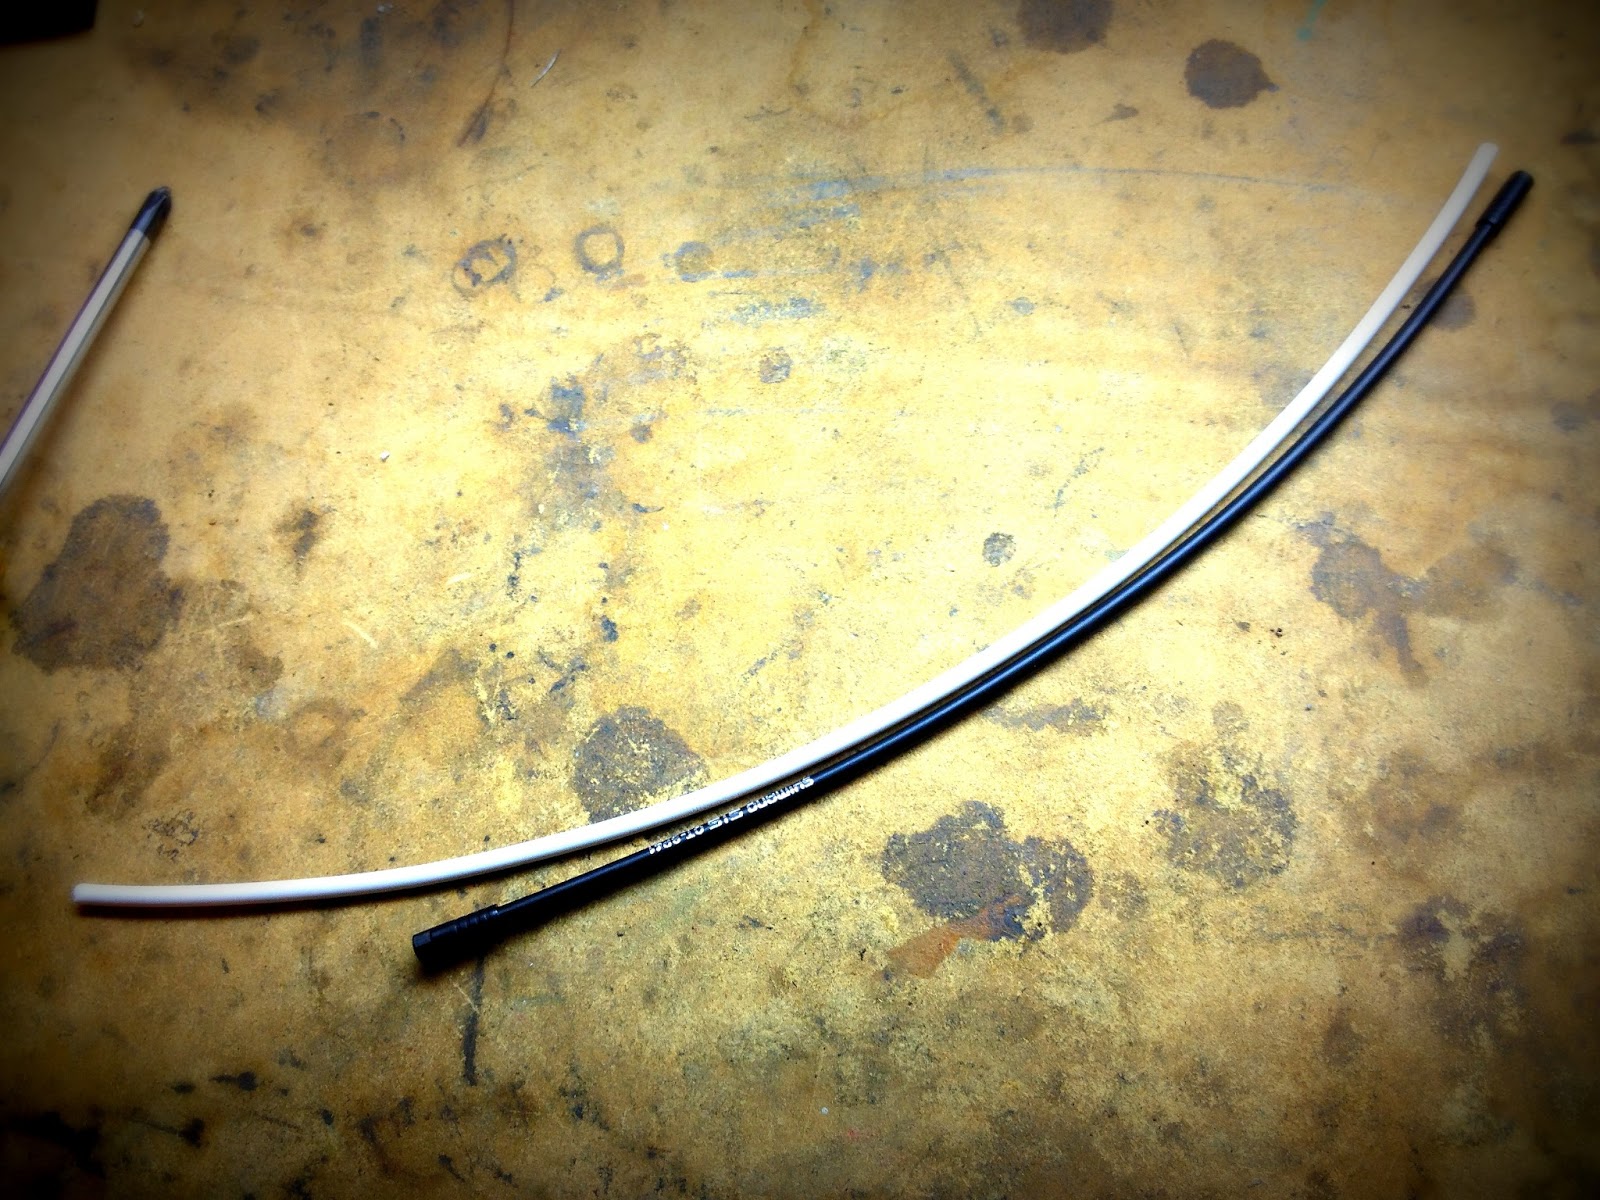 Shimano Rear Derailleur Cable Length